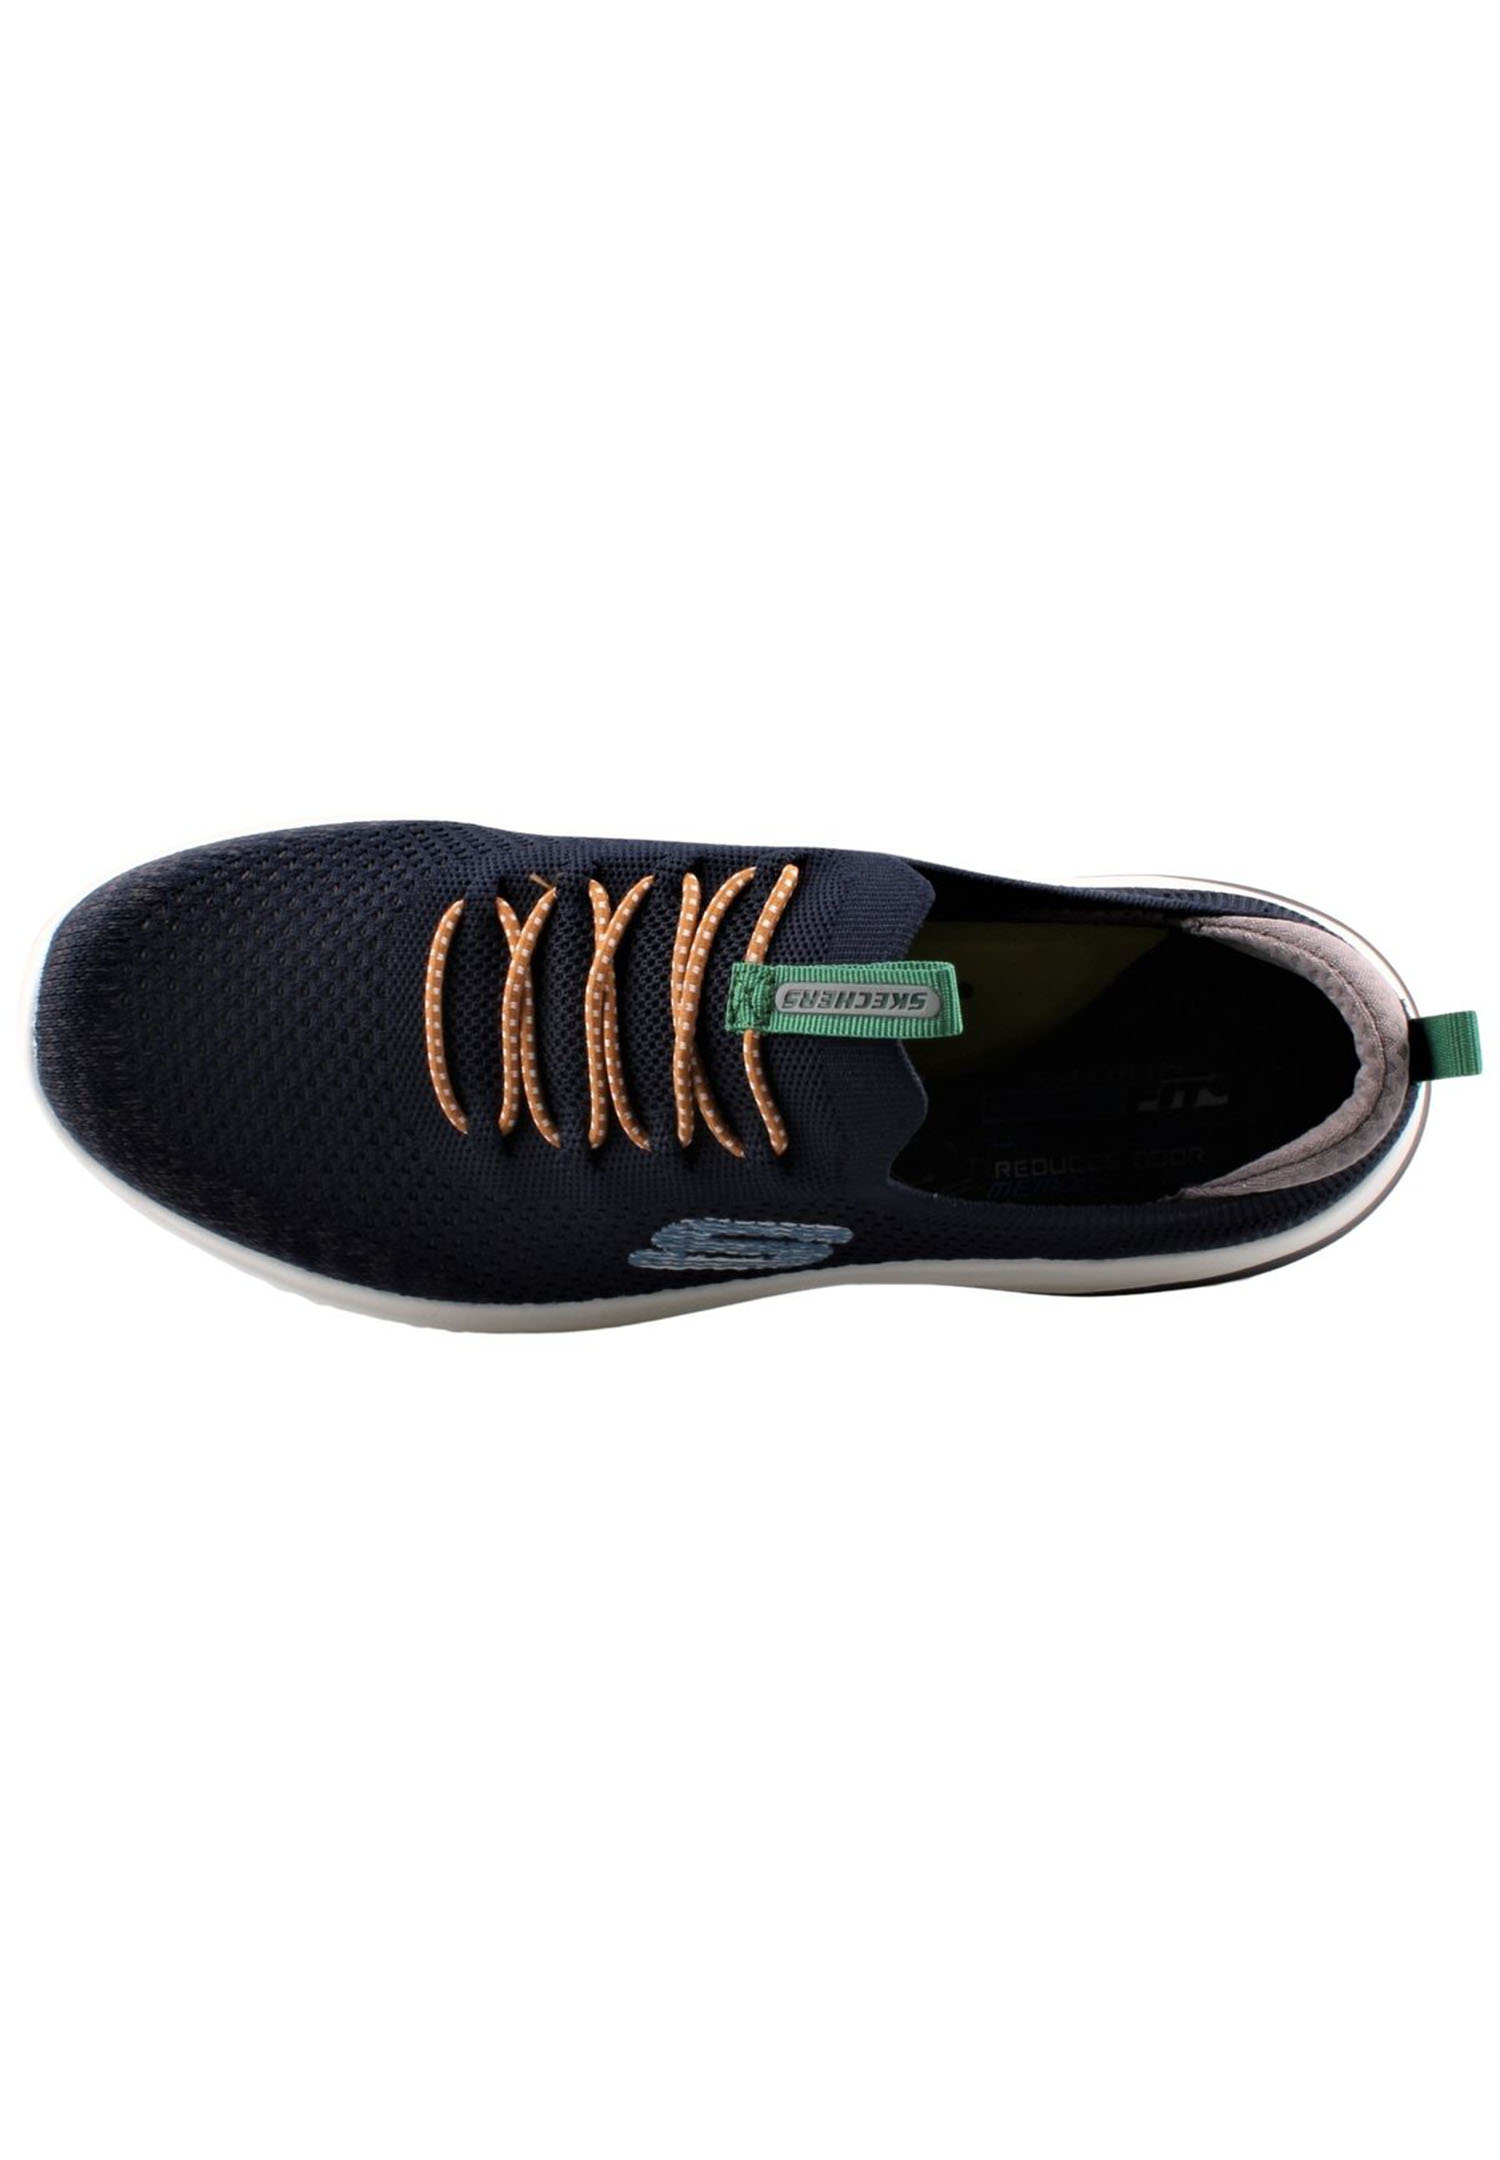 Skechers Delson 3.0 - MENDON Herren Sneaker 210574 NVY navy